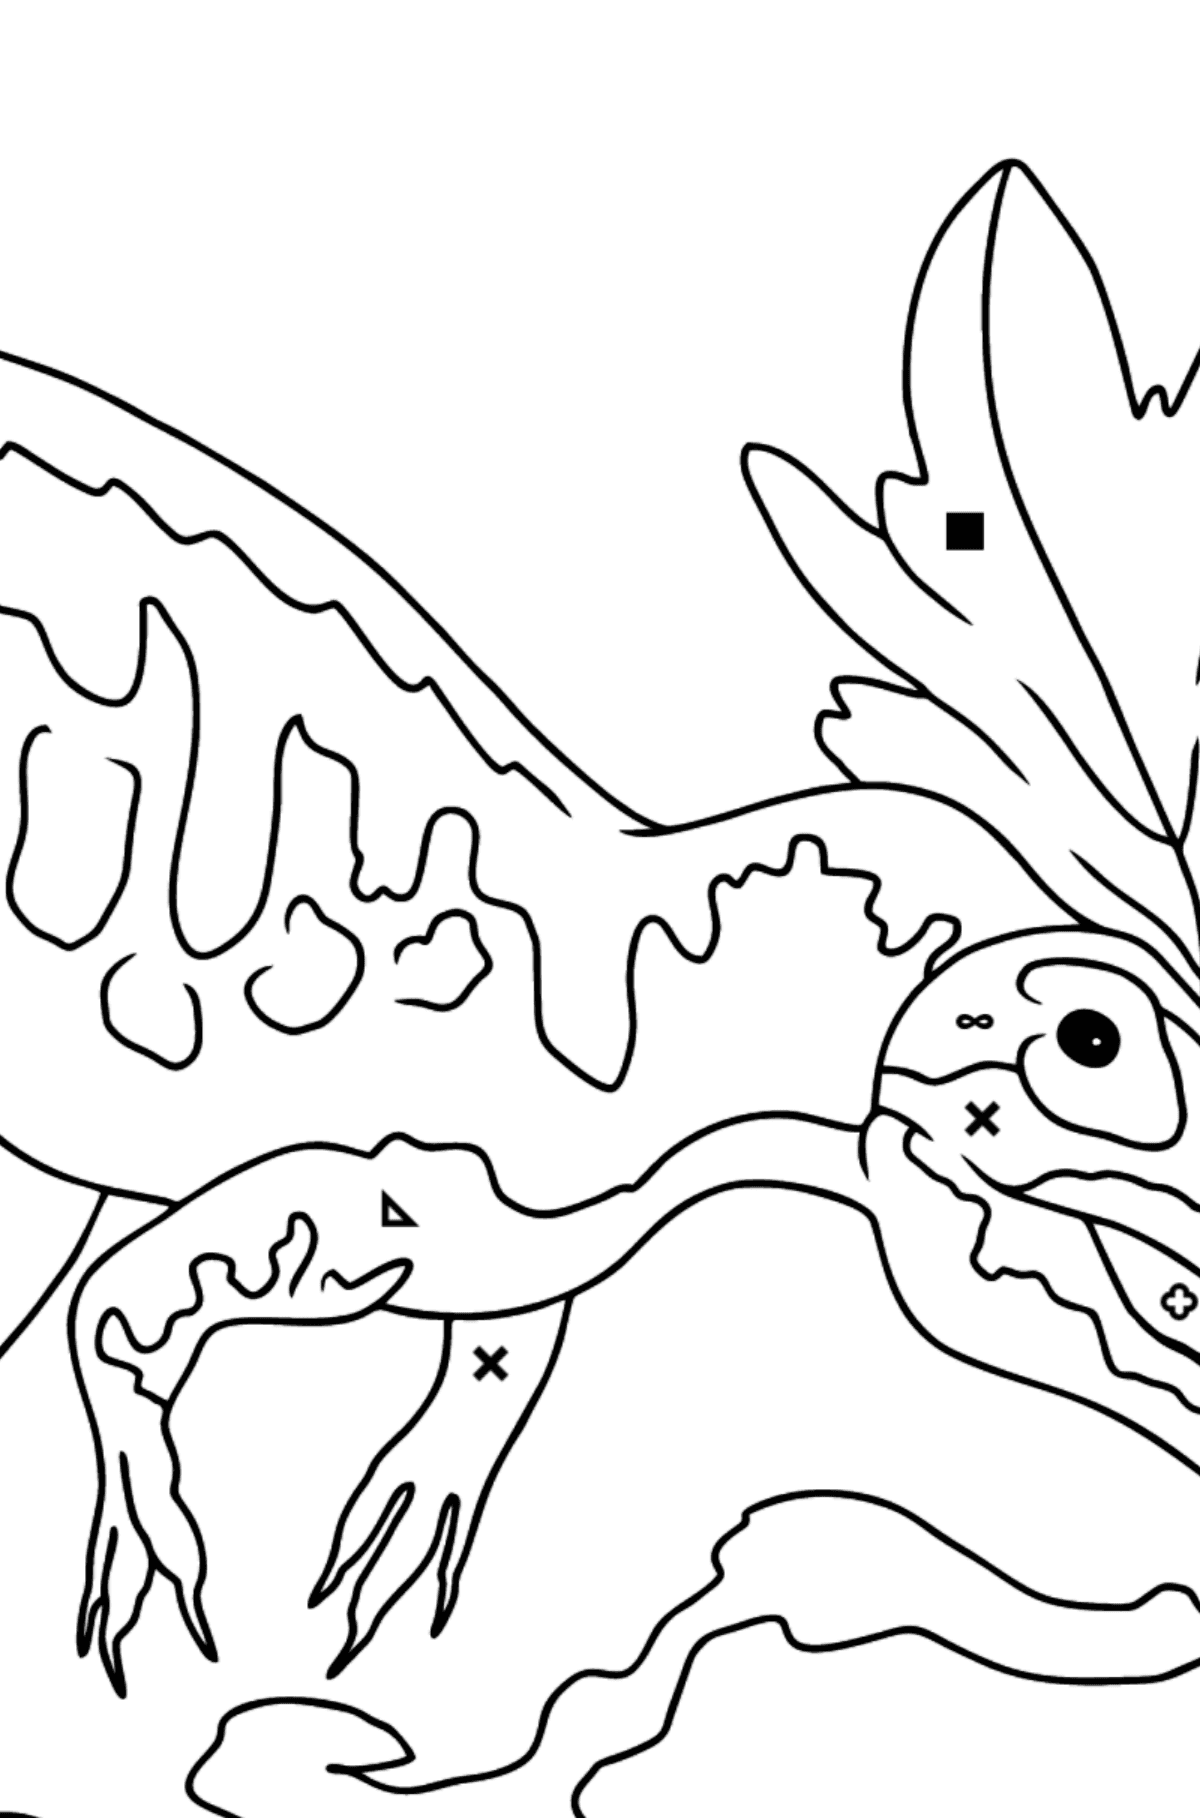 Tegning til fargelegging allosaurus - Fargelegge etter symboler og geometriske former for barn